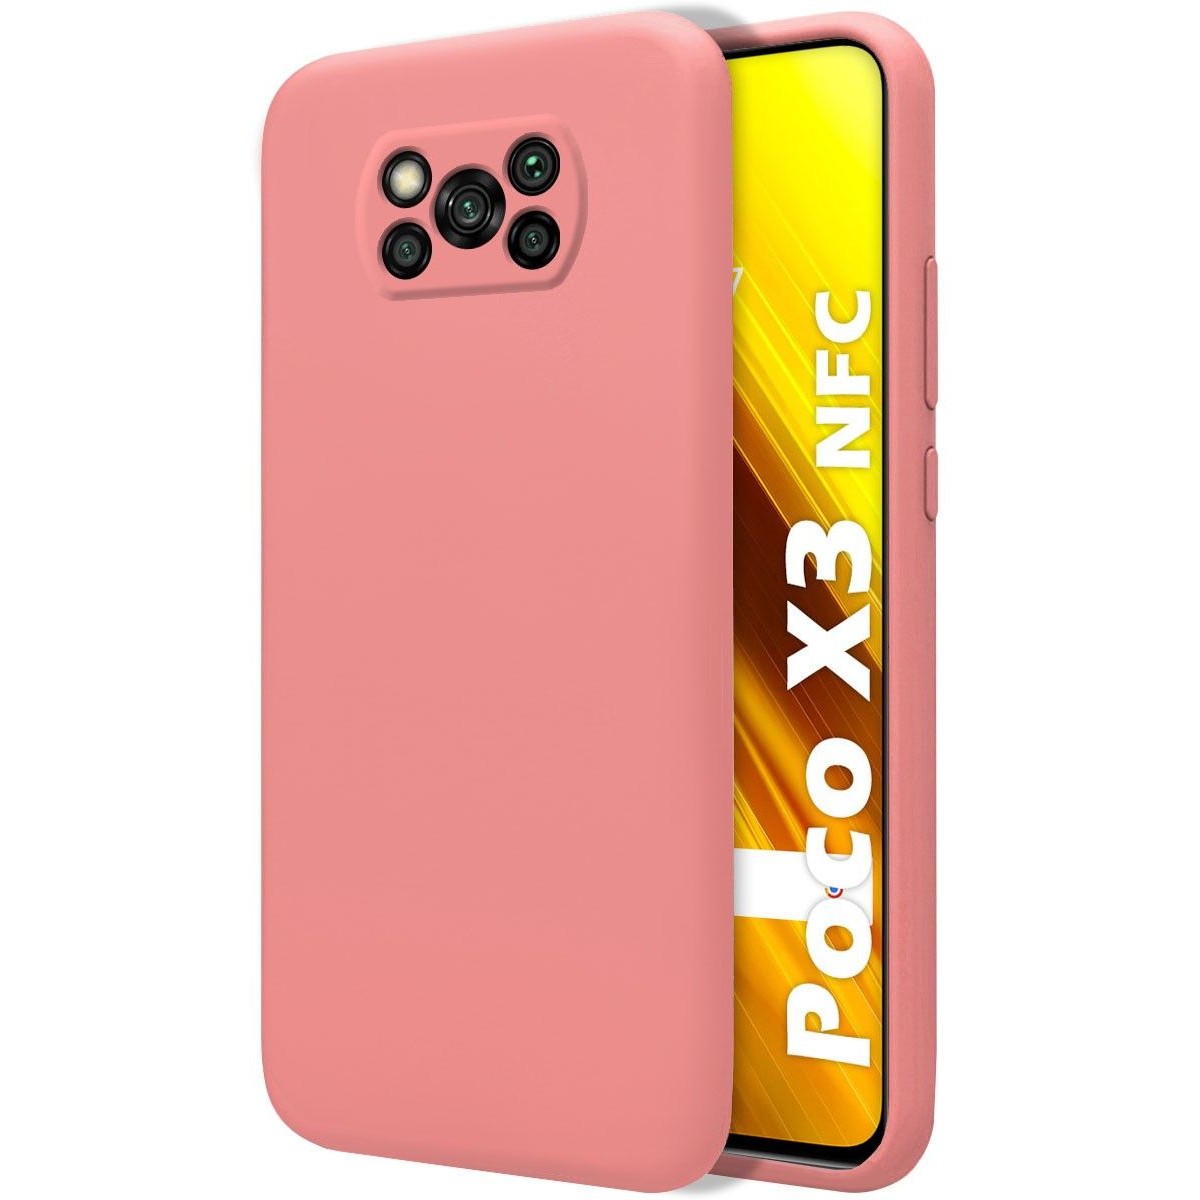 Funda Poco X3 / X3 Pro / X3 NFC de silicona líquida con colgante